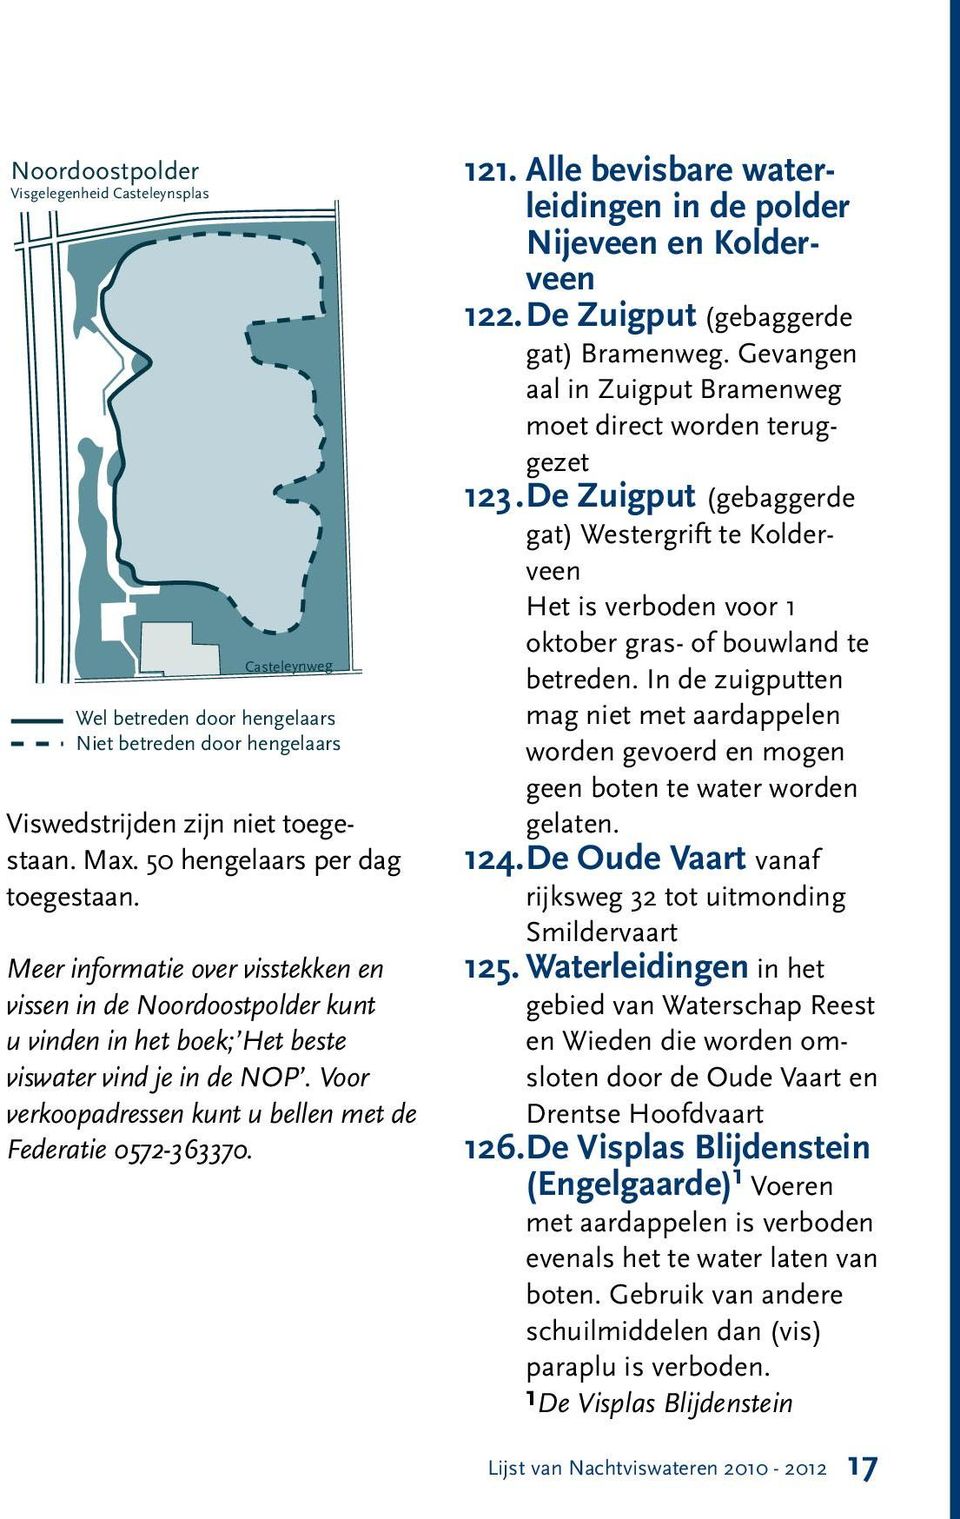 Alle bevisbare waterleidingen in de polder Nijeveen en Kolderveen 122. De Zuigput (gebaggerde gat) Bramenweg. Gevangen aal in Zuigput Bramenweg moet direct worden teruggezet 123.